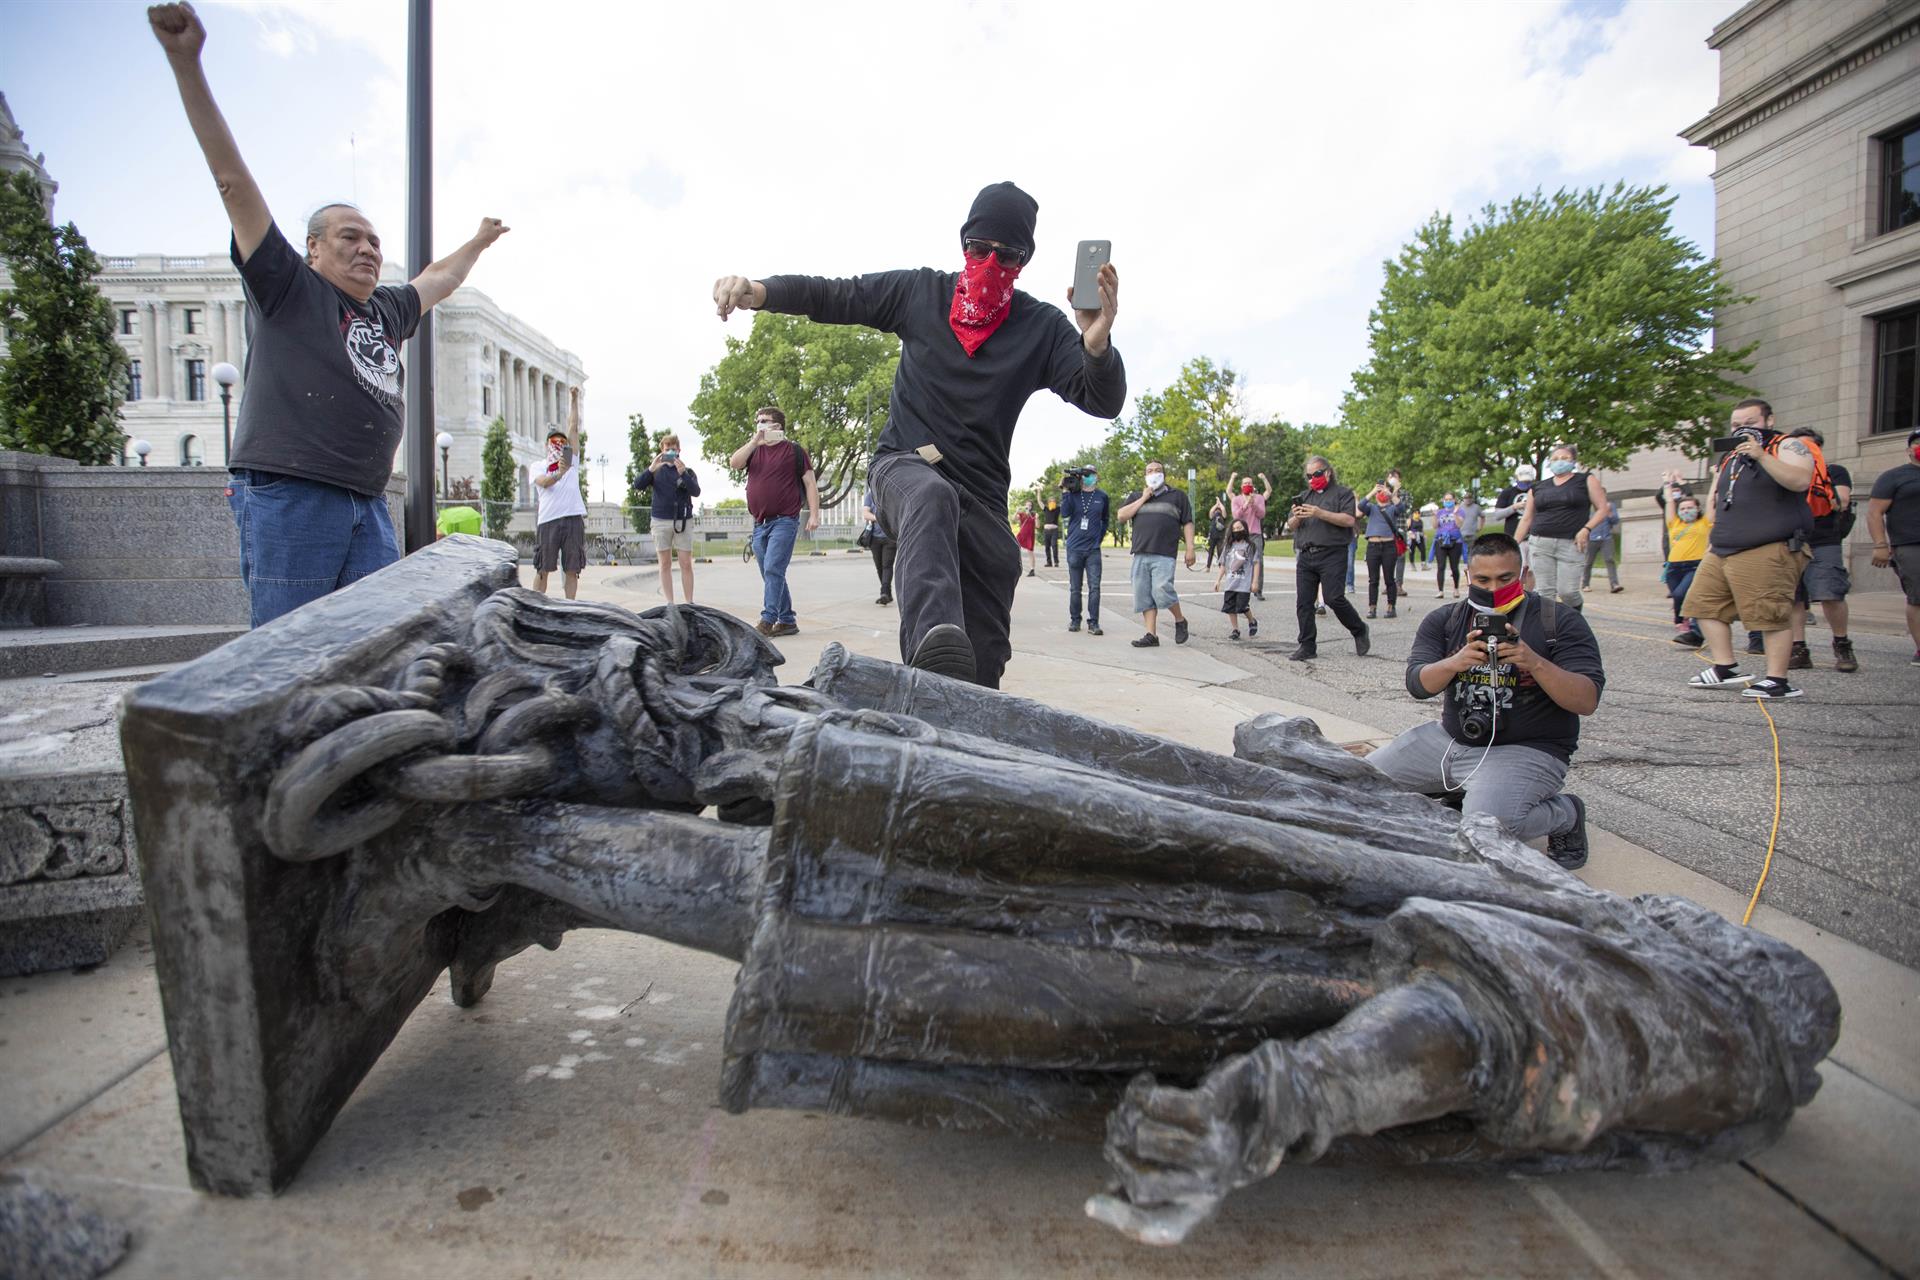 Unos hombres ante una estatua de Colón derribada. FOTO: Chris Juhn/ZUMA Wire/dpa